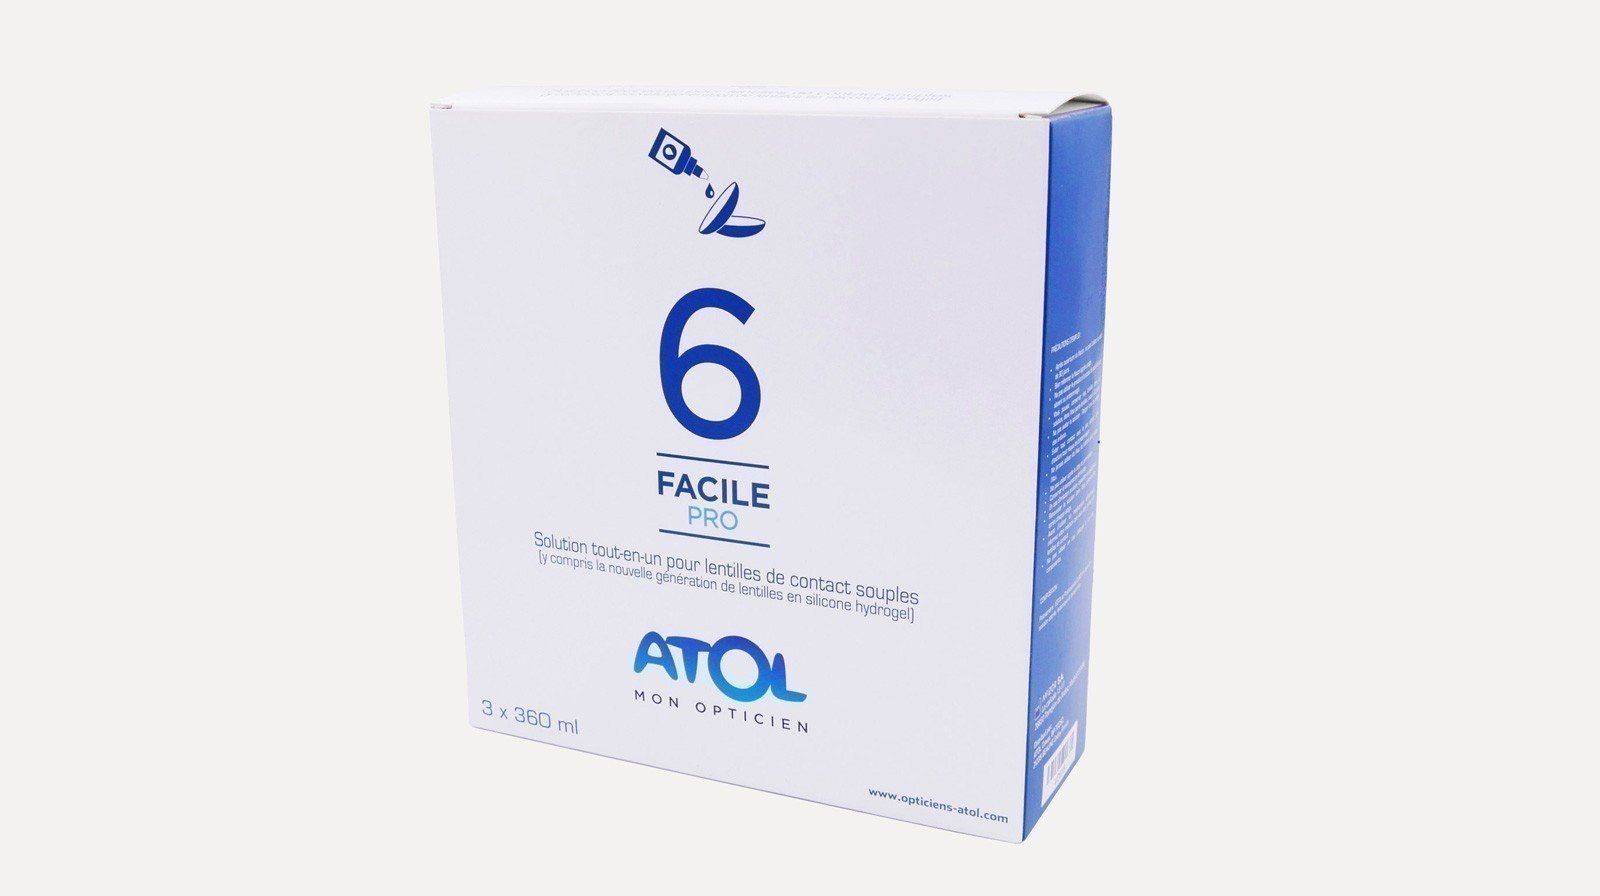 Solution d'entretien pour lentilles rigides - 6 FACILE 3x360 ml - Atol